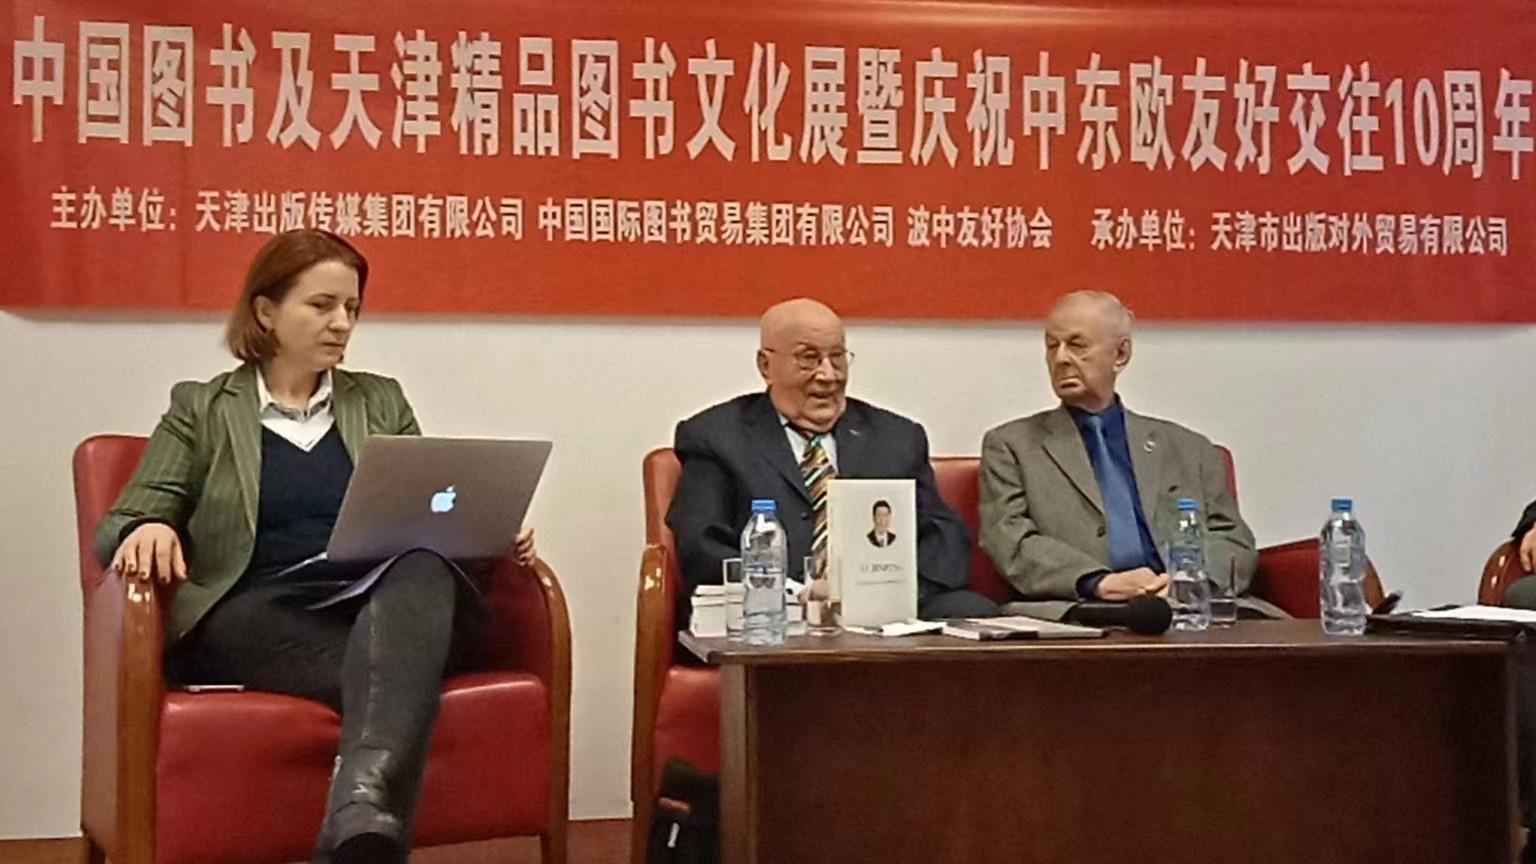 Seminarium „Dziesięciolecie przyjacielskiej współpracy Chin z Europą Środkowo-Wschodnią” towarzyszące wystawie chińskich książek tematycznych i kultury księgarskiej Tianjinu.